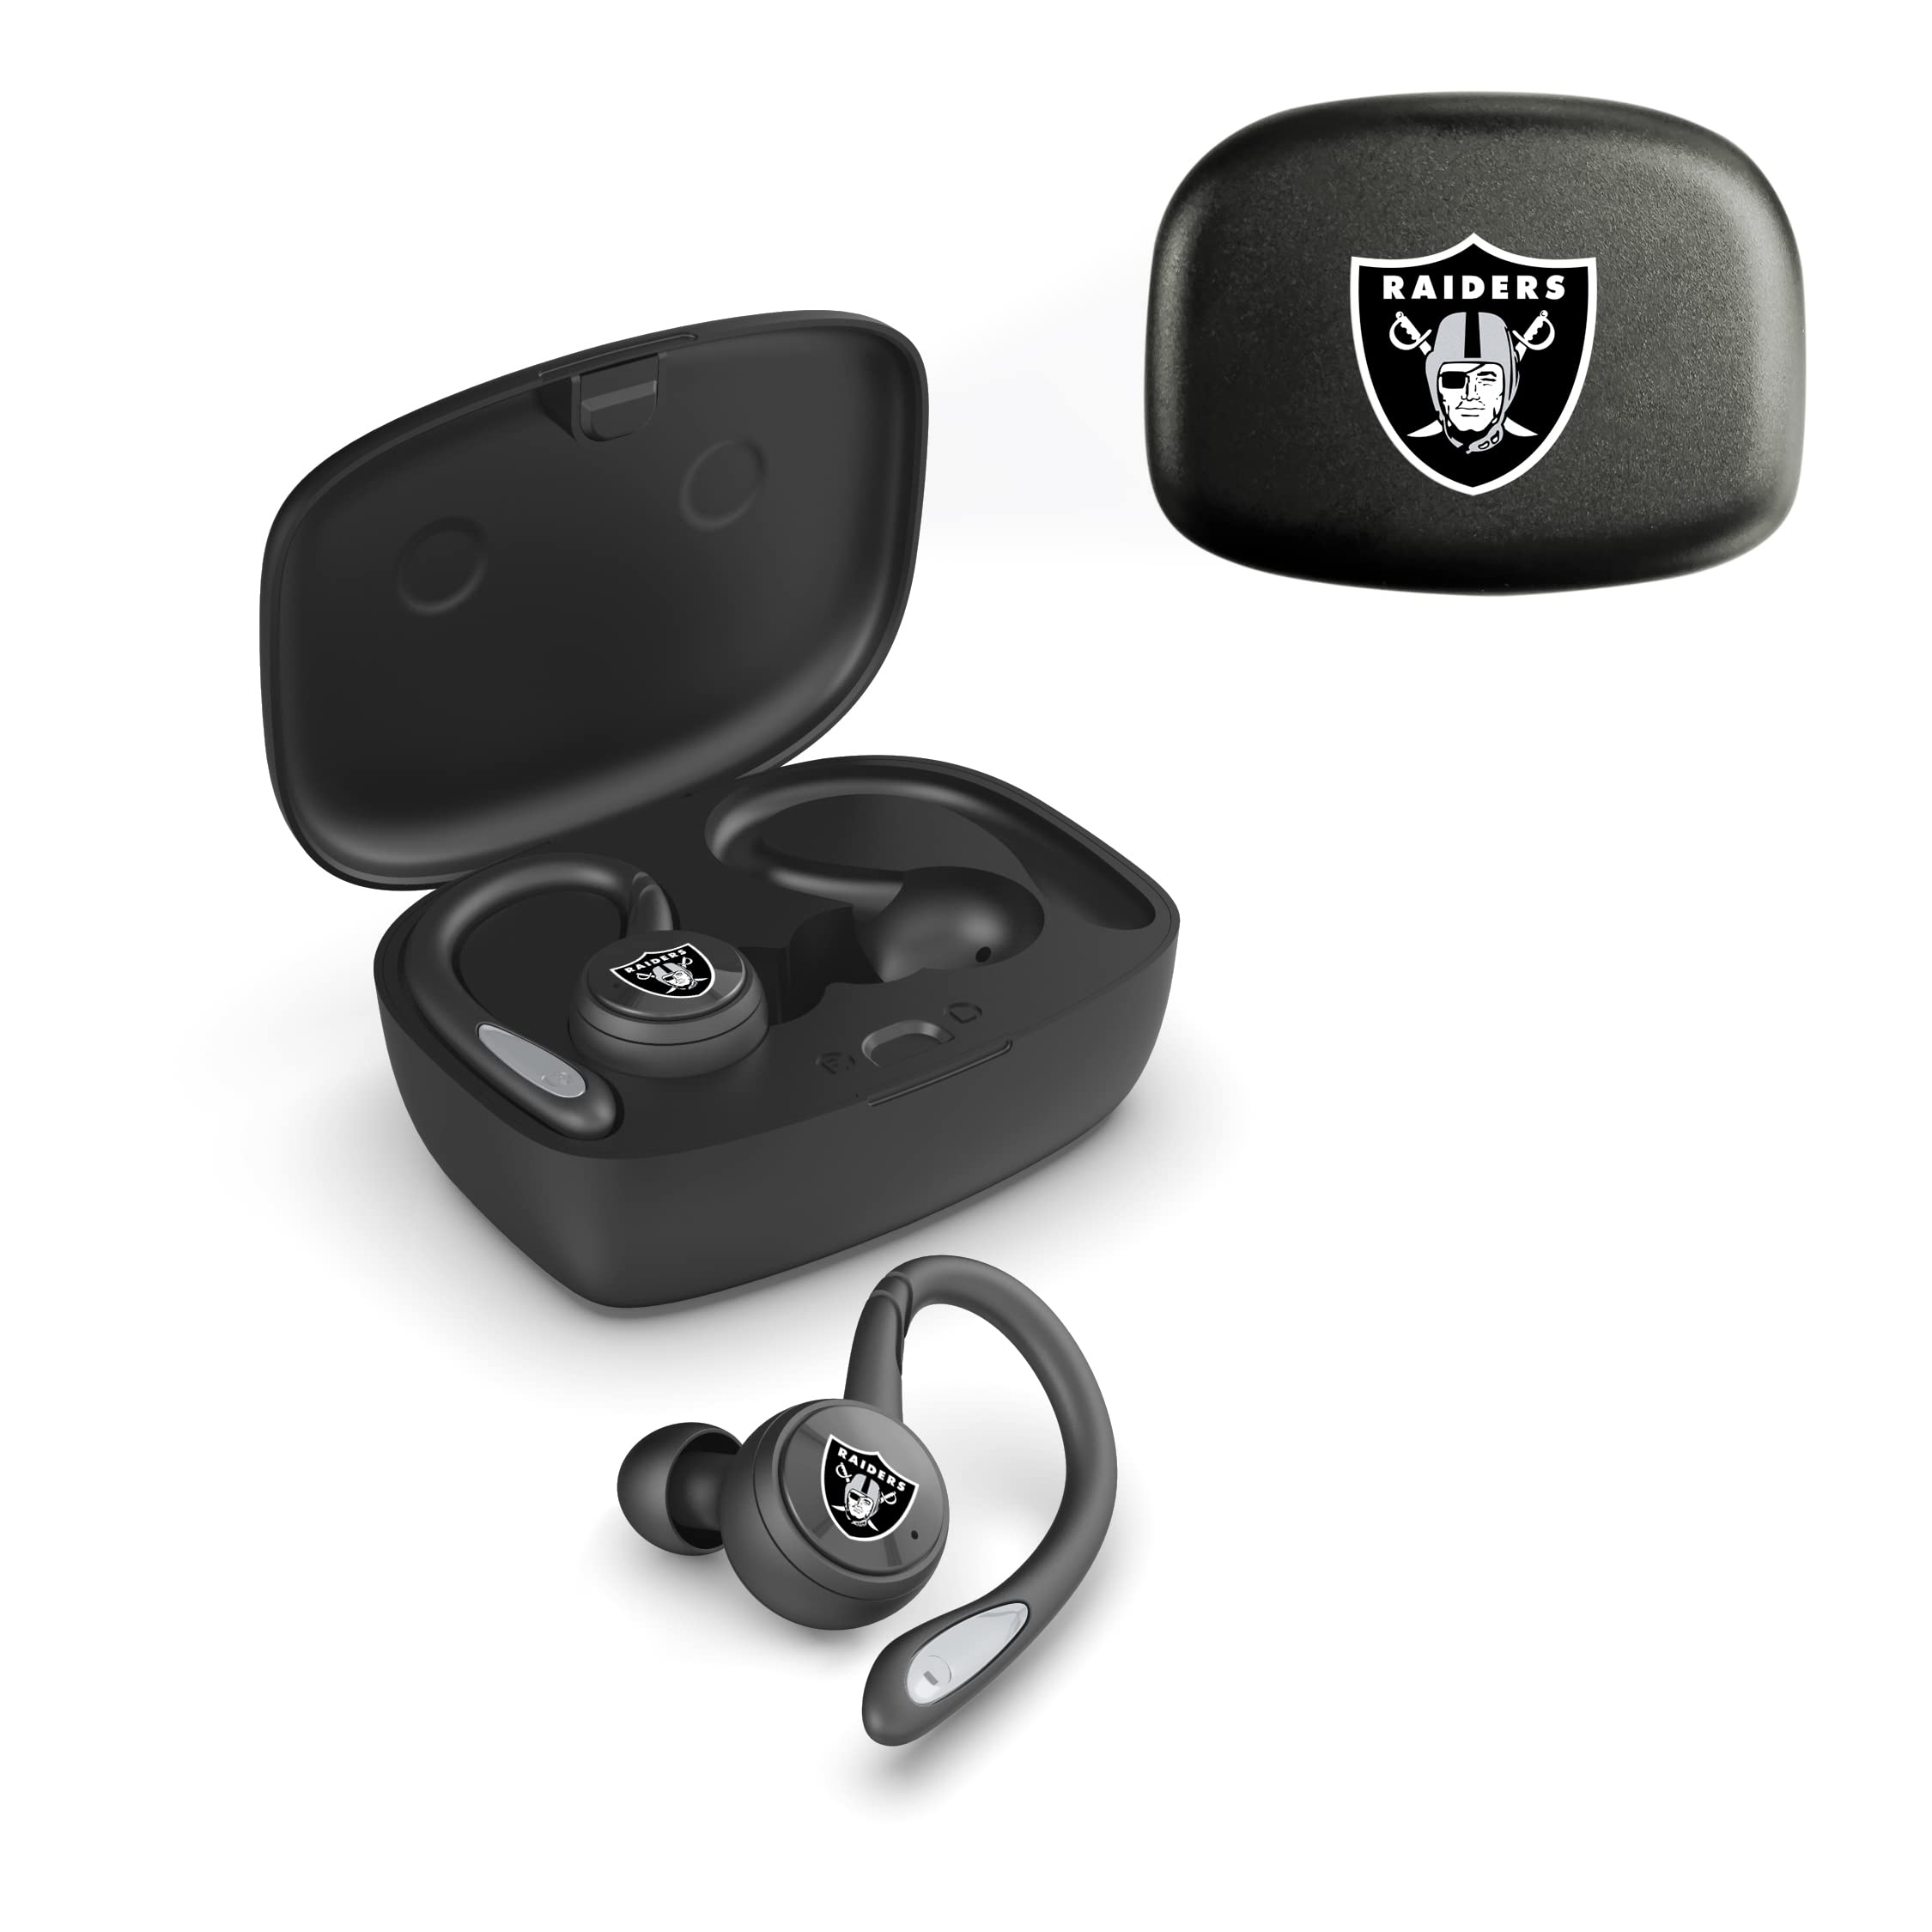 Soar NFL True Wireless Earbuds V.4, Las Vegas Raiders